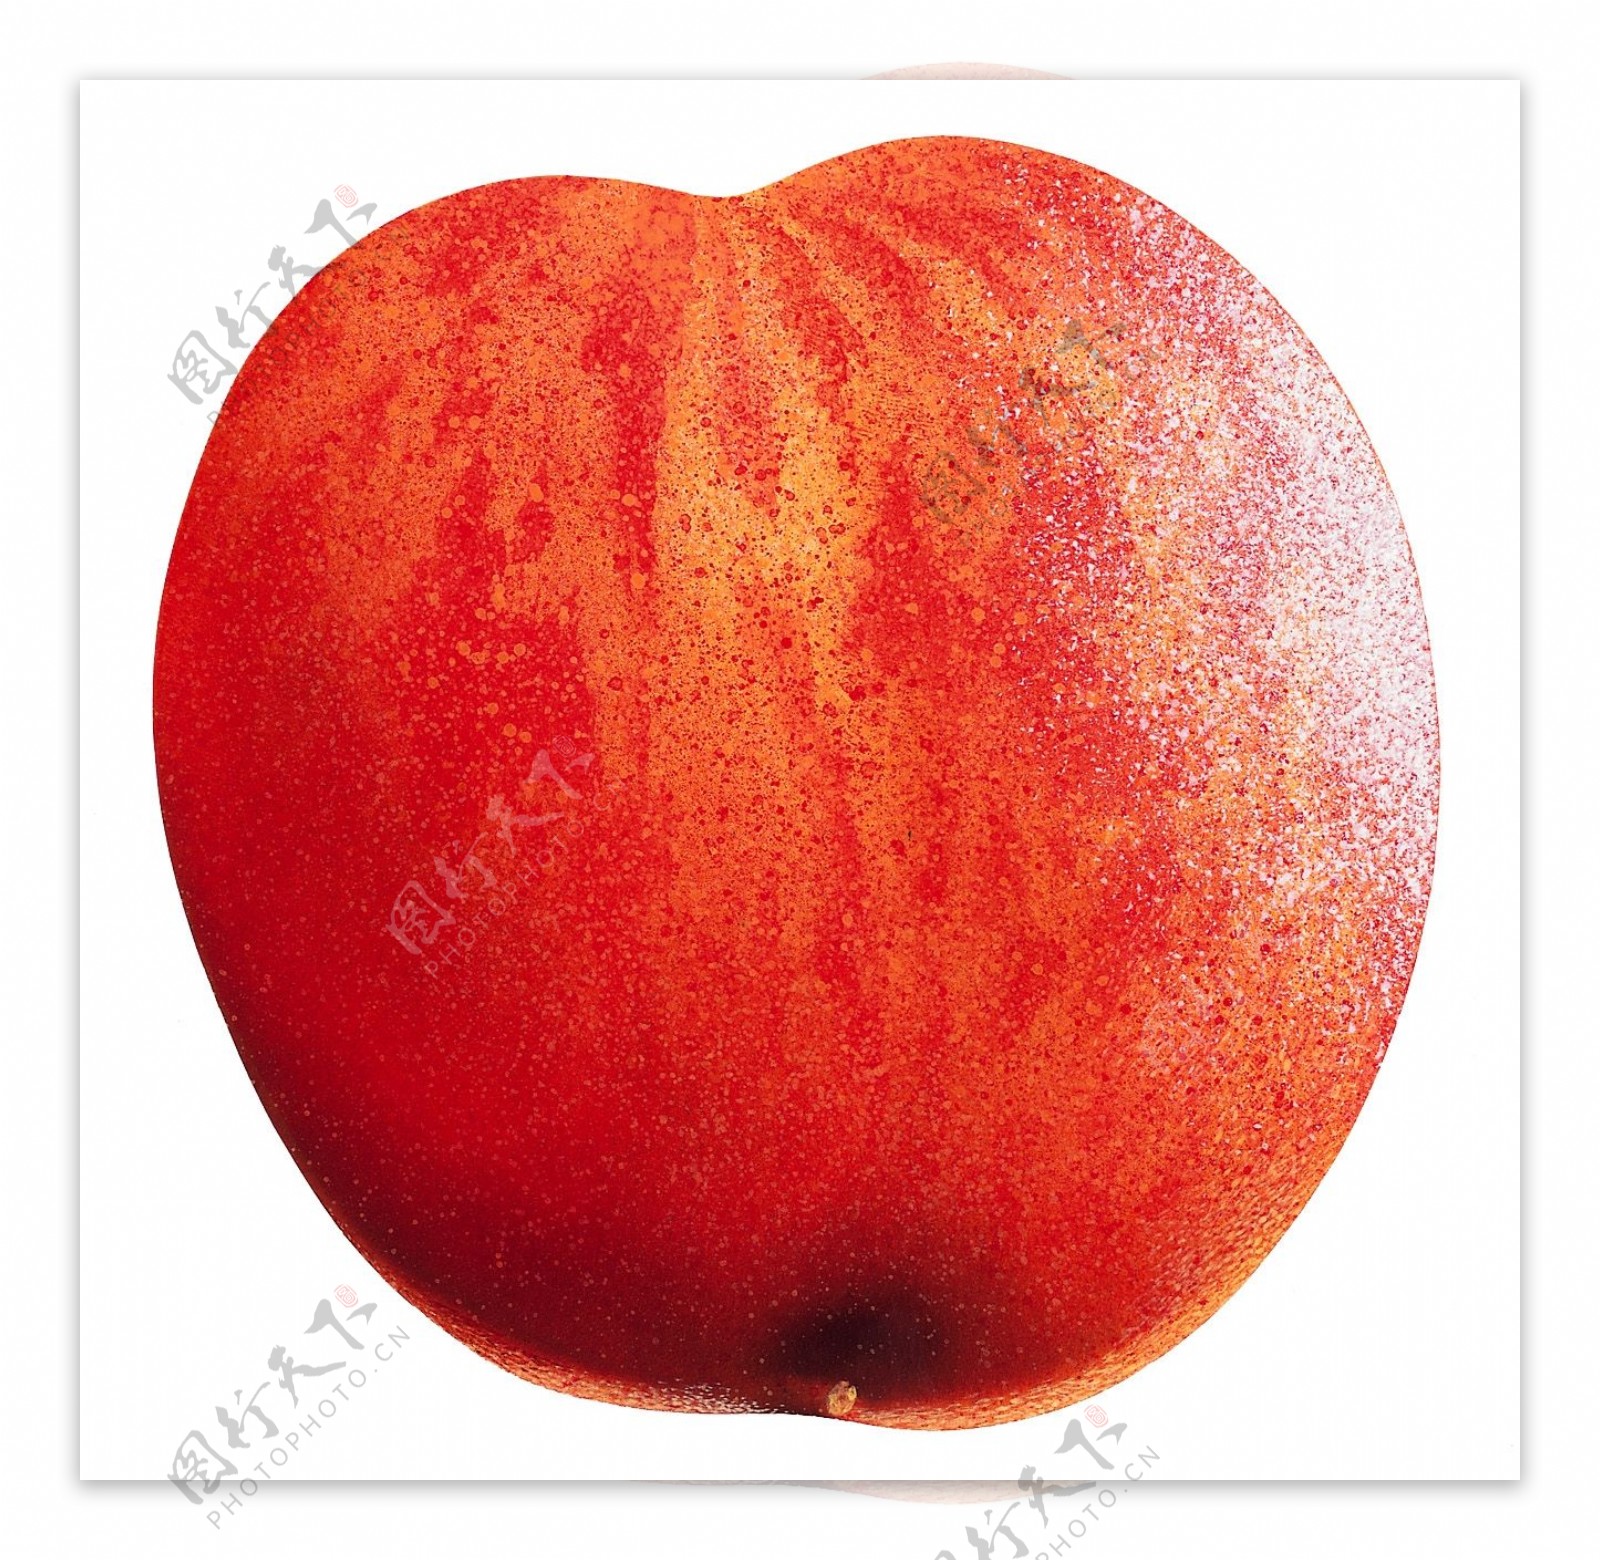 水蜜桃桃子特写桃子图片桃子标本桃子素材